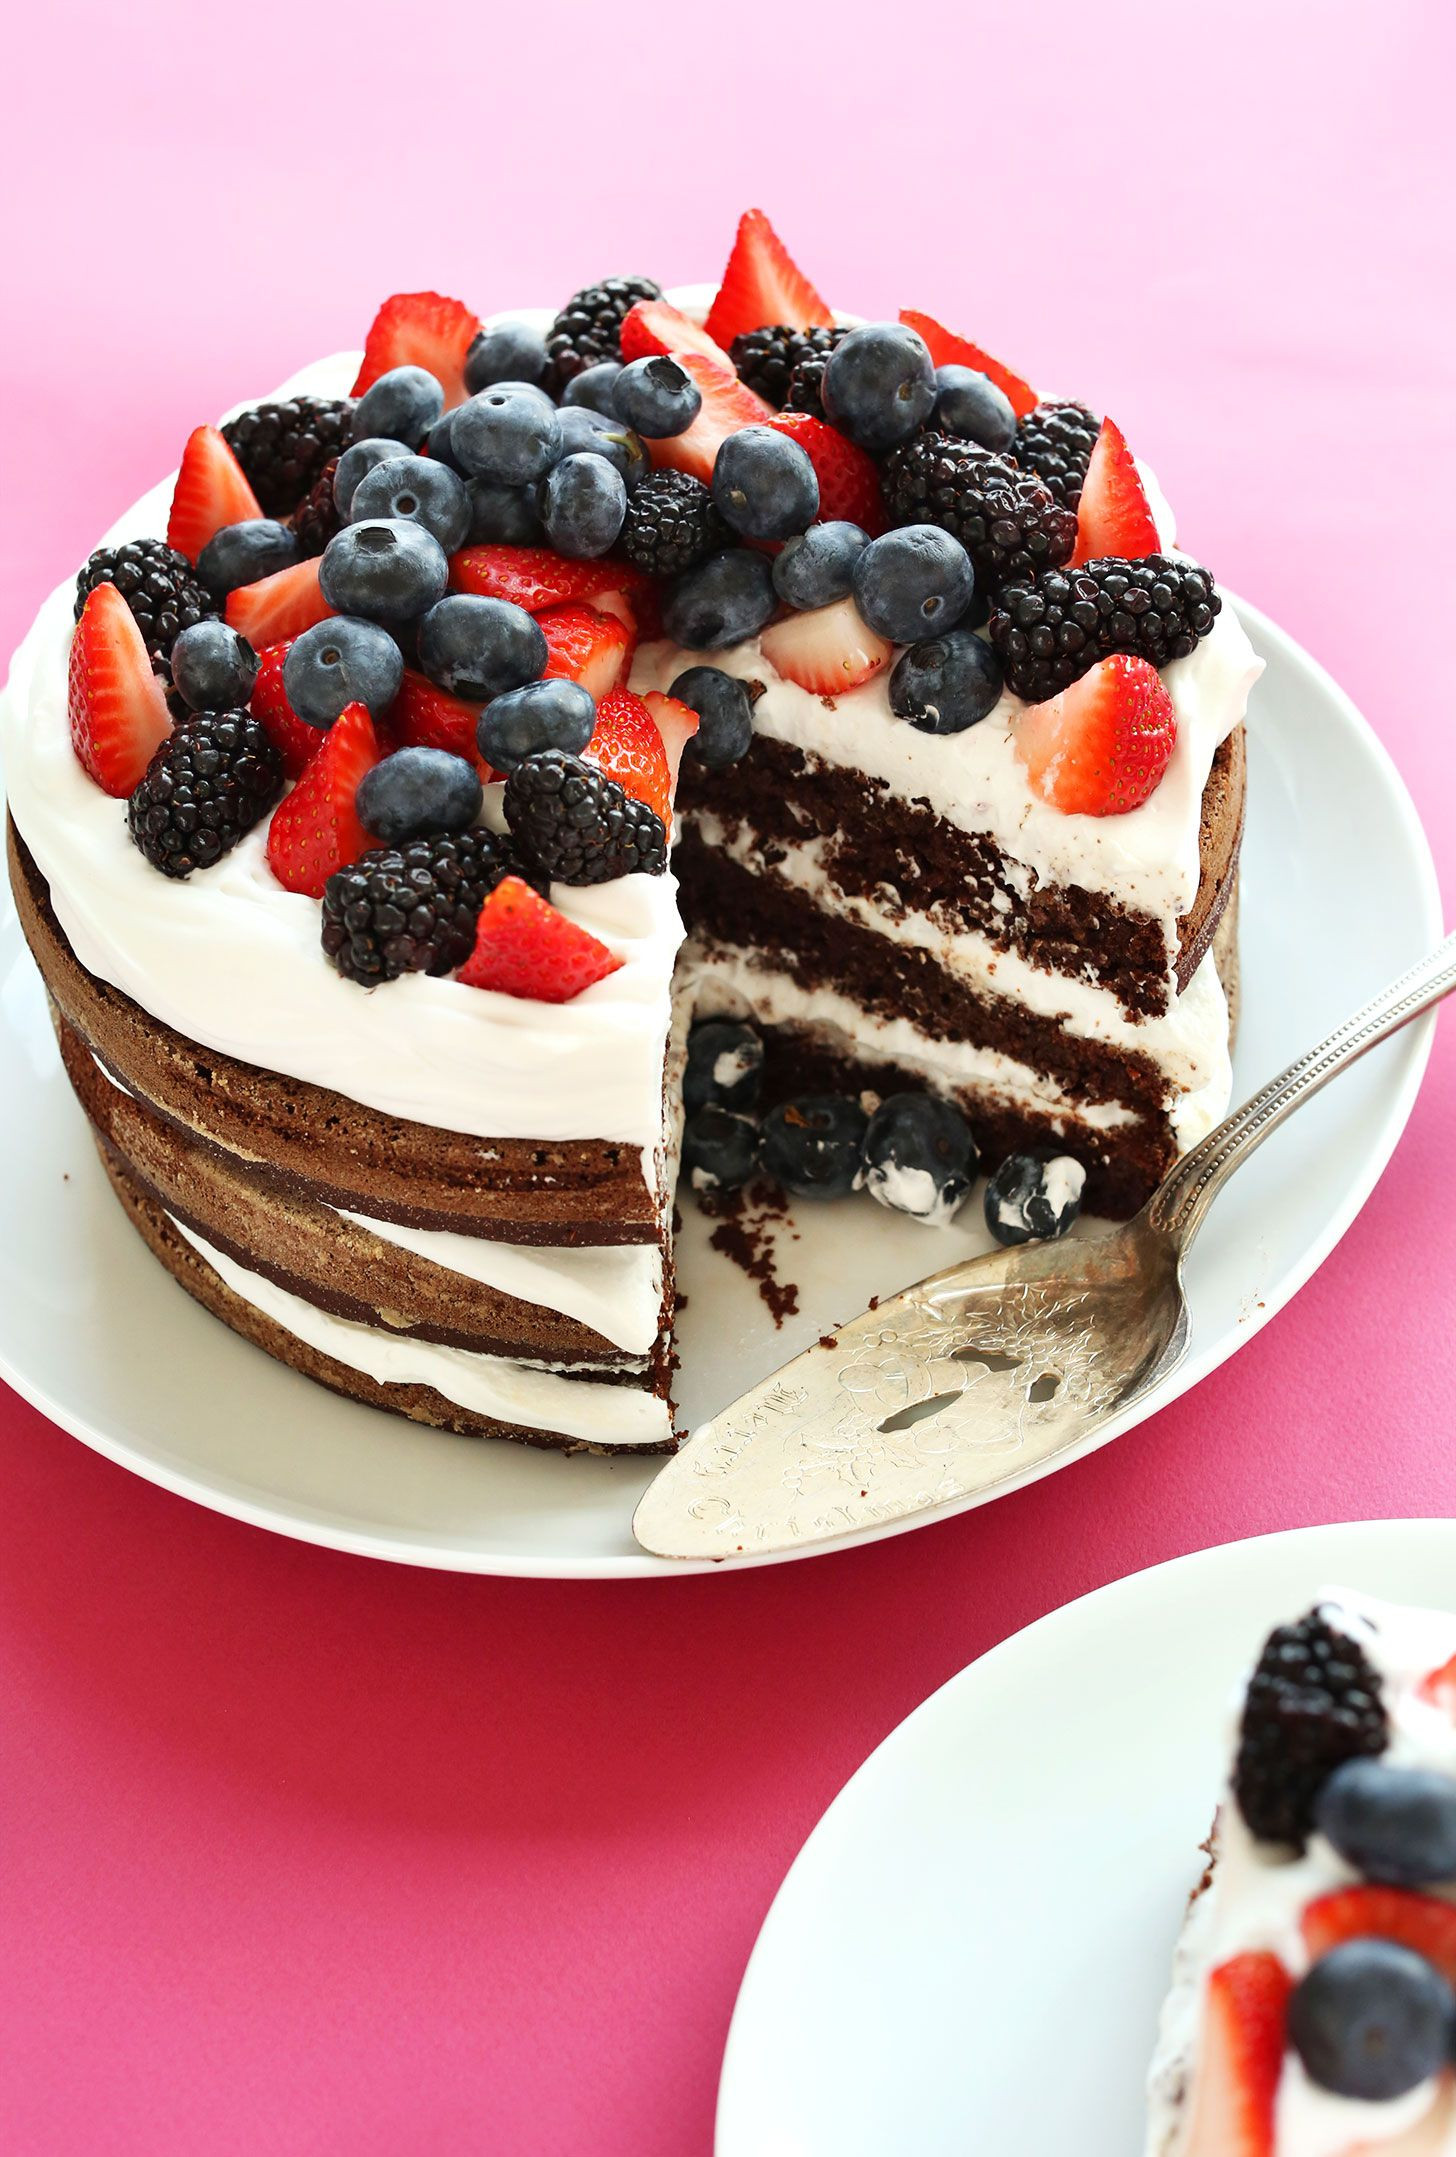 Best ideas about Gluten Free Birthday Cake Recipe
. Save or Pin Gluten Free Birthday Cake Vegan Recipe Now.